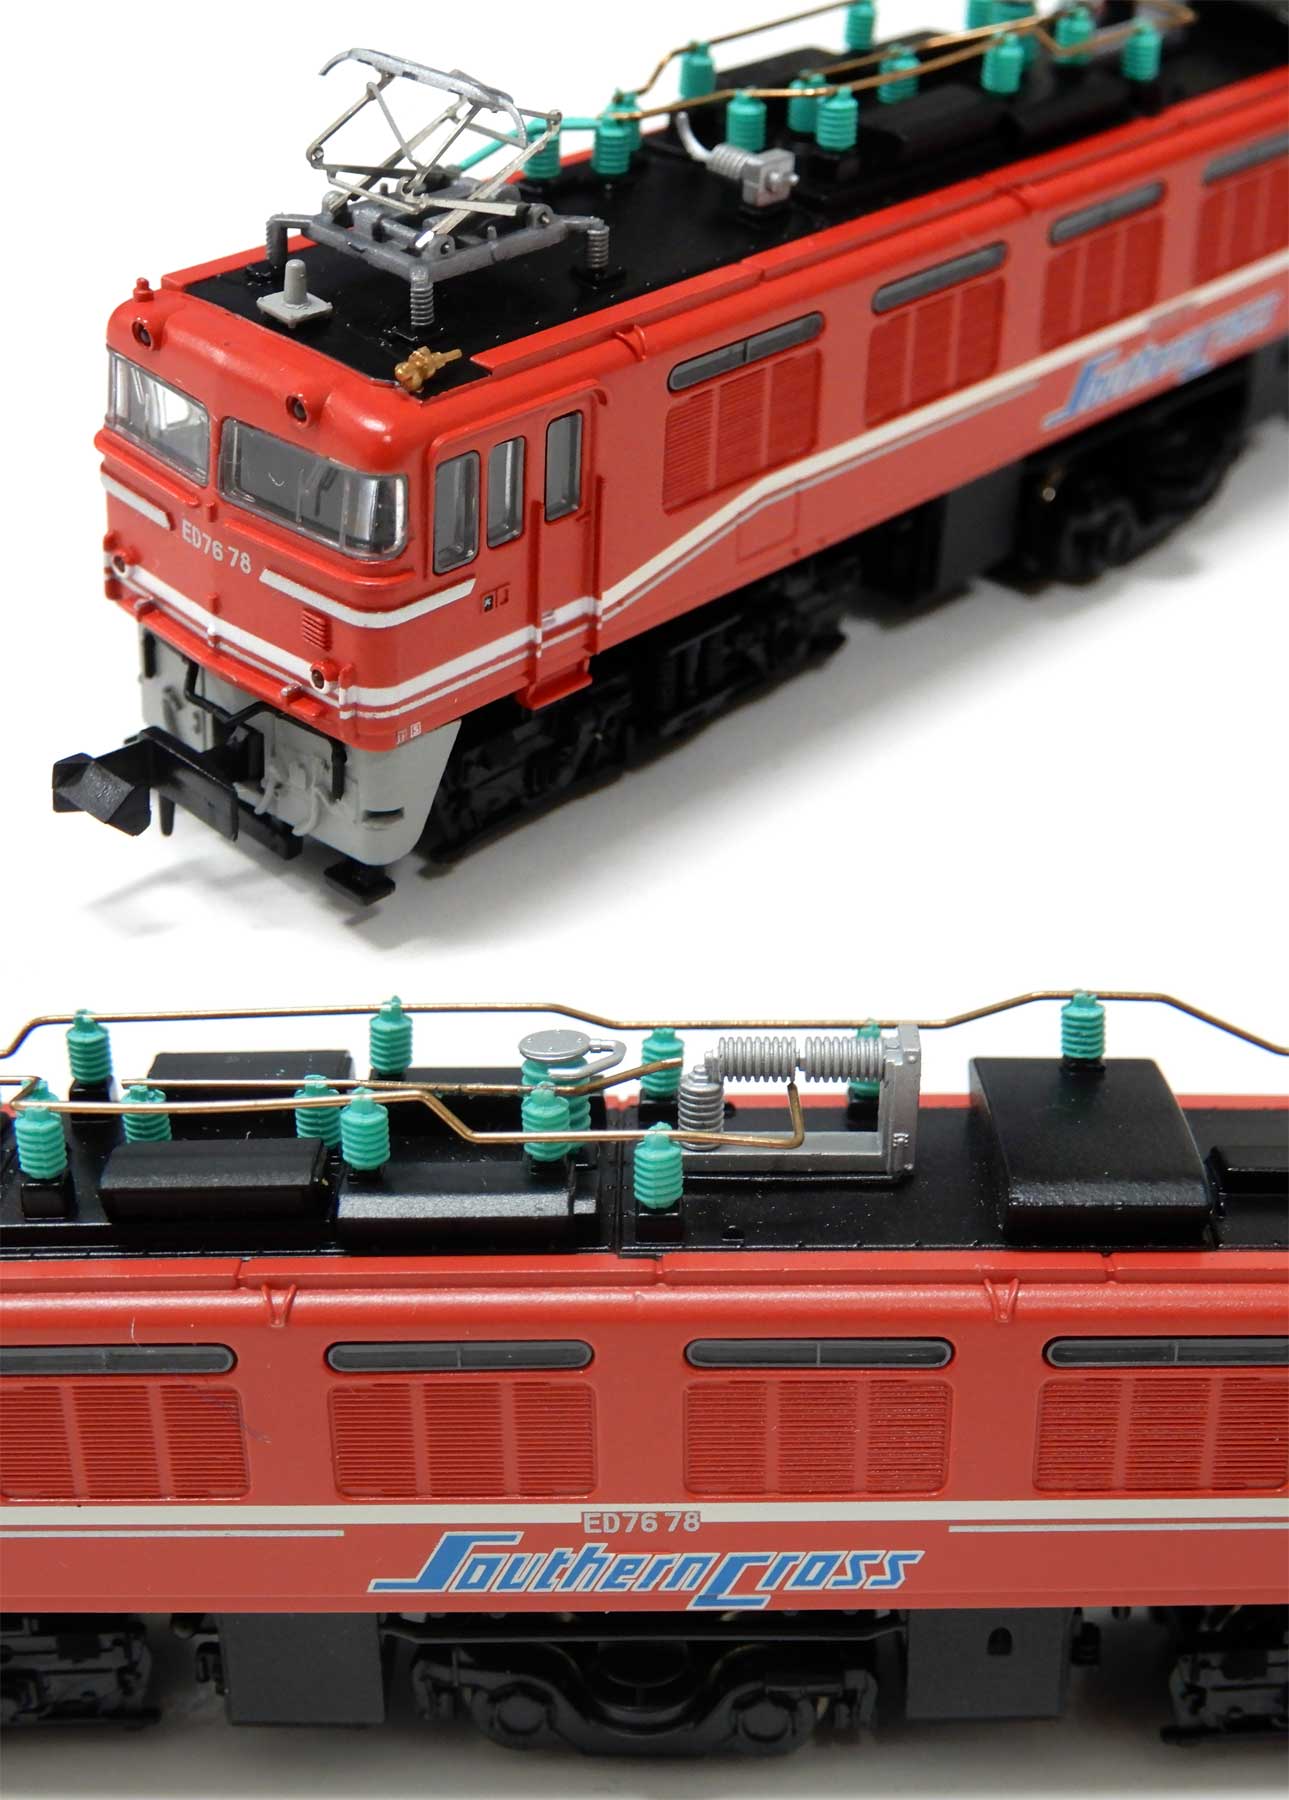 公式]鉄道模型(A0950ED76-78・4次形・サザンクロス色)商品詳細 